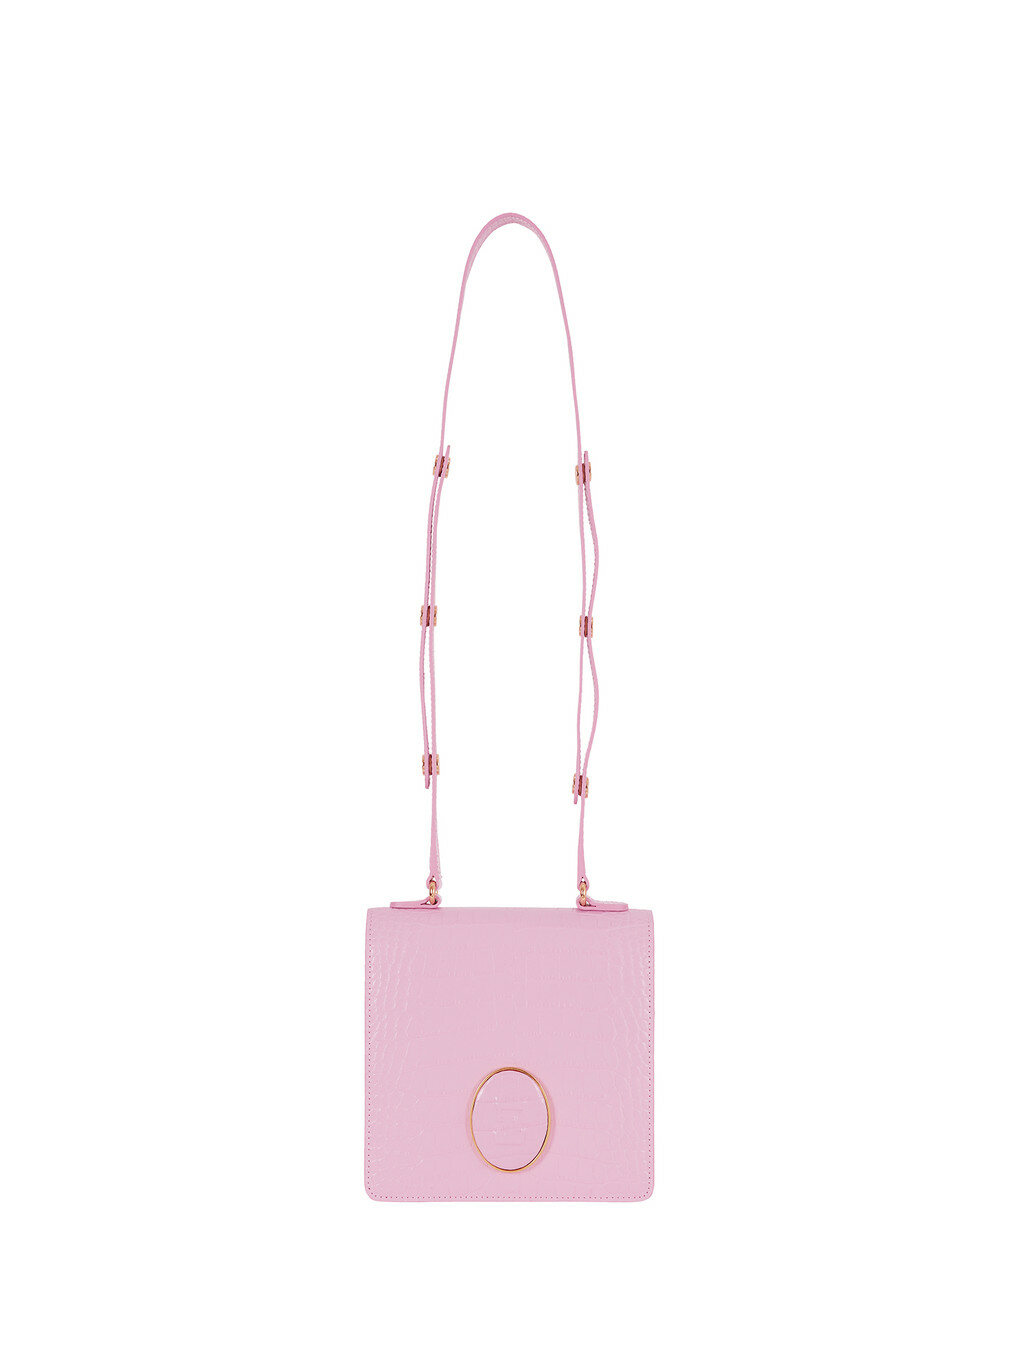 HERTZ Bag - Light Pink